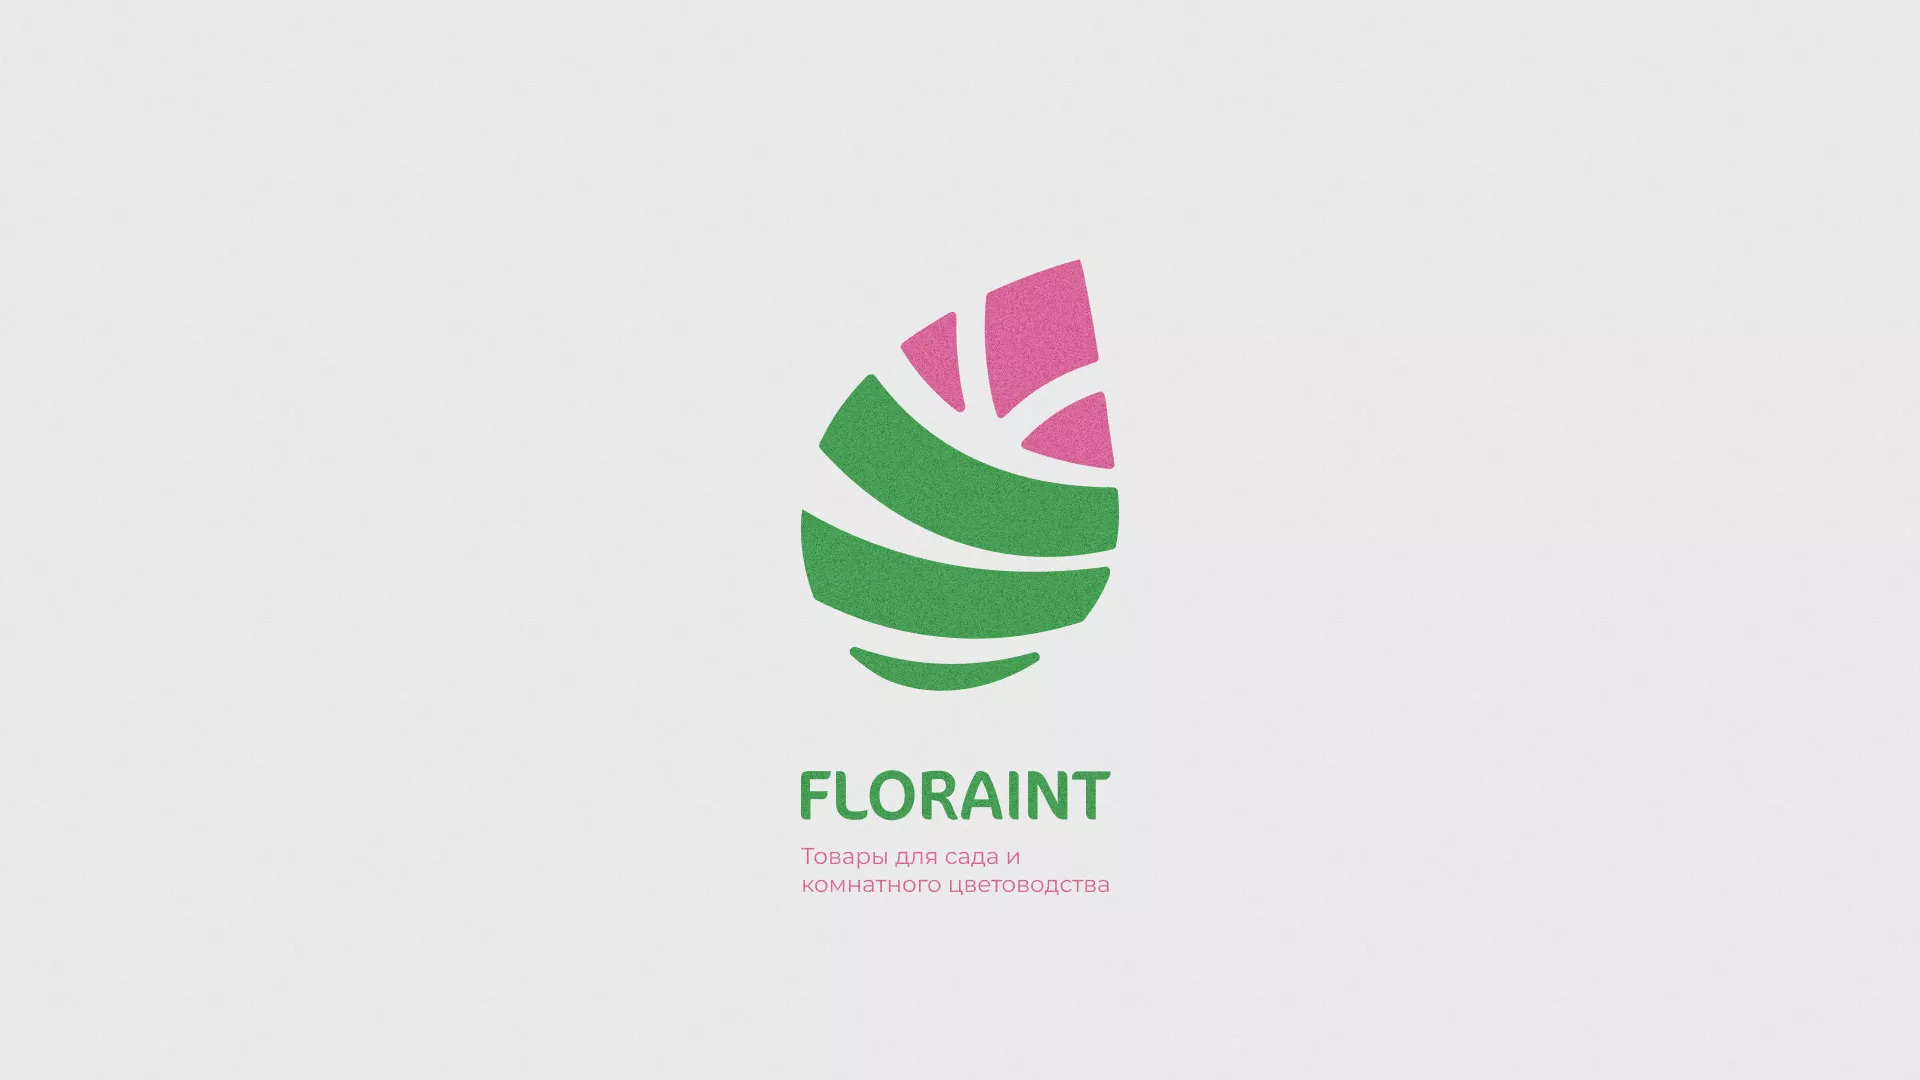 Разработка оформления профиля Instagram для магазина «Floraint» в Вичуге